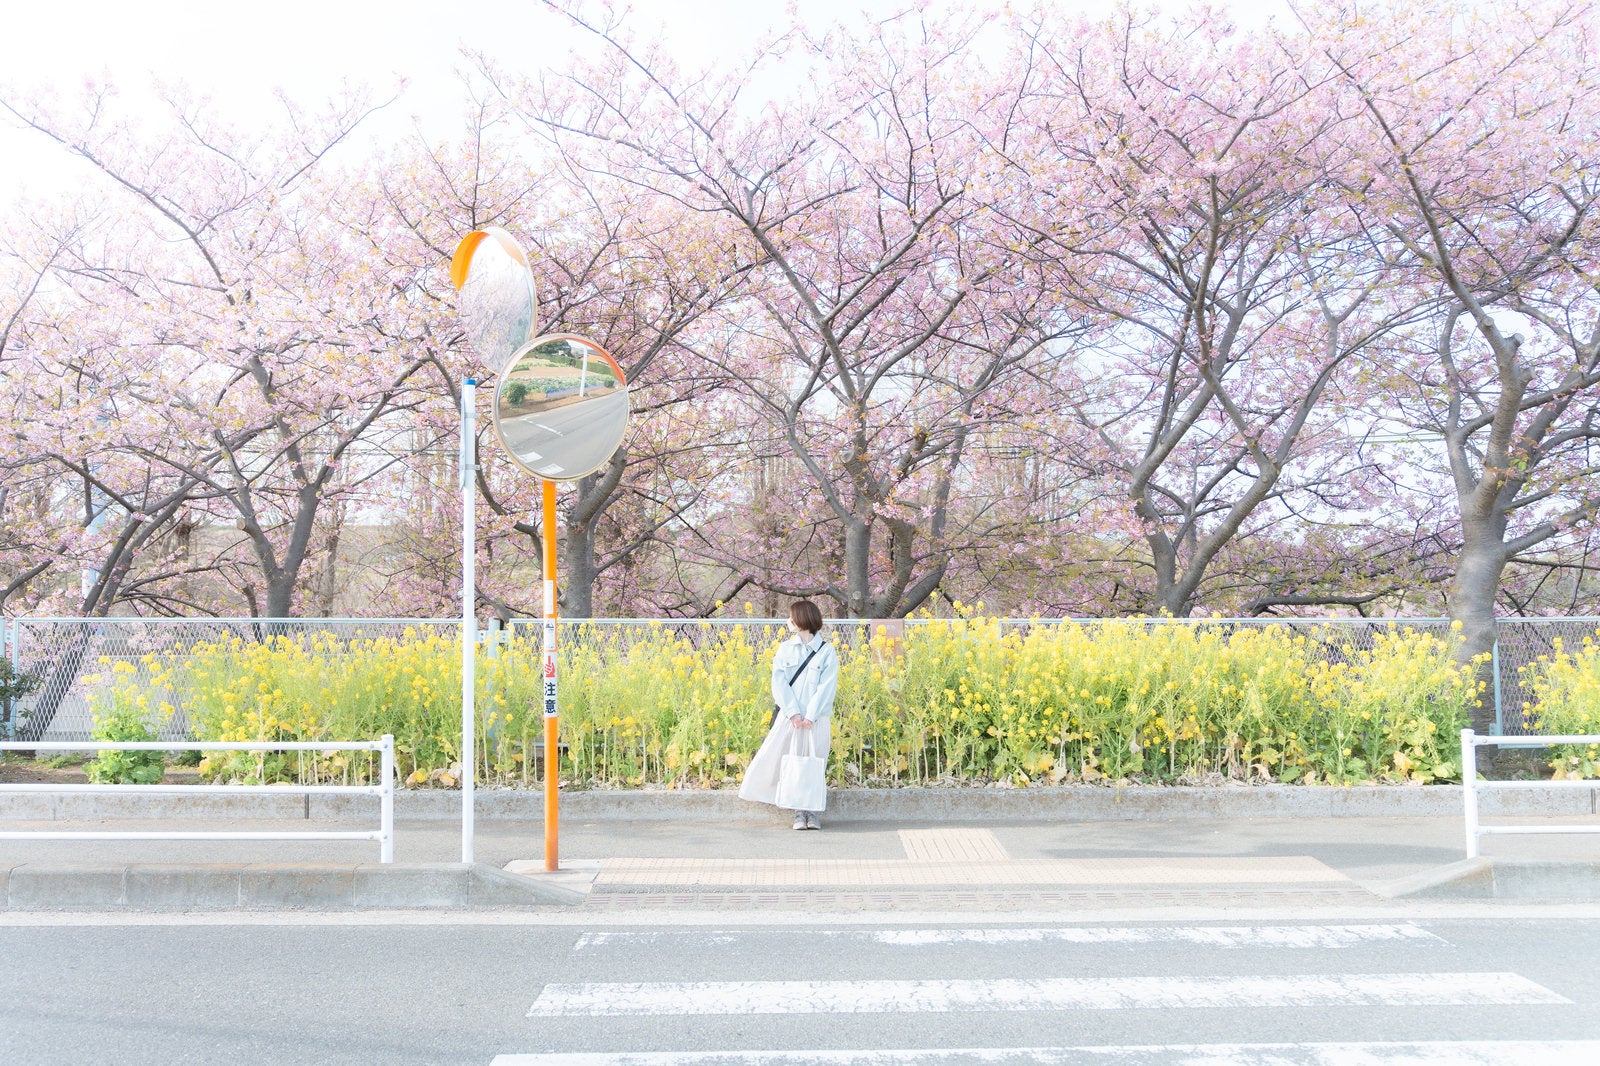 「菜の花の前でタクシー待ちする女性」の写真